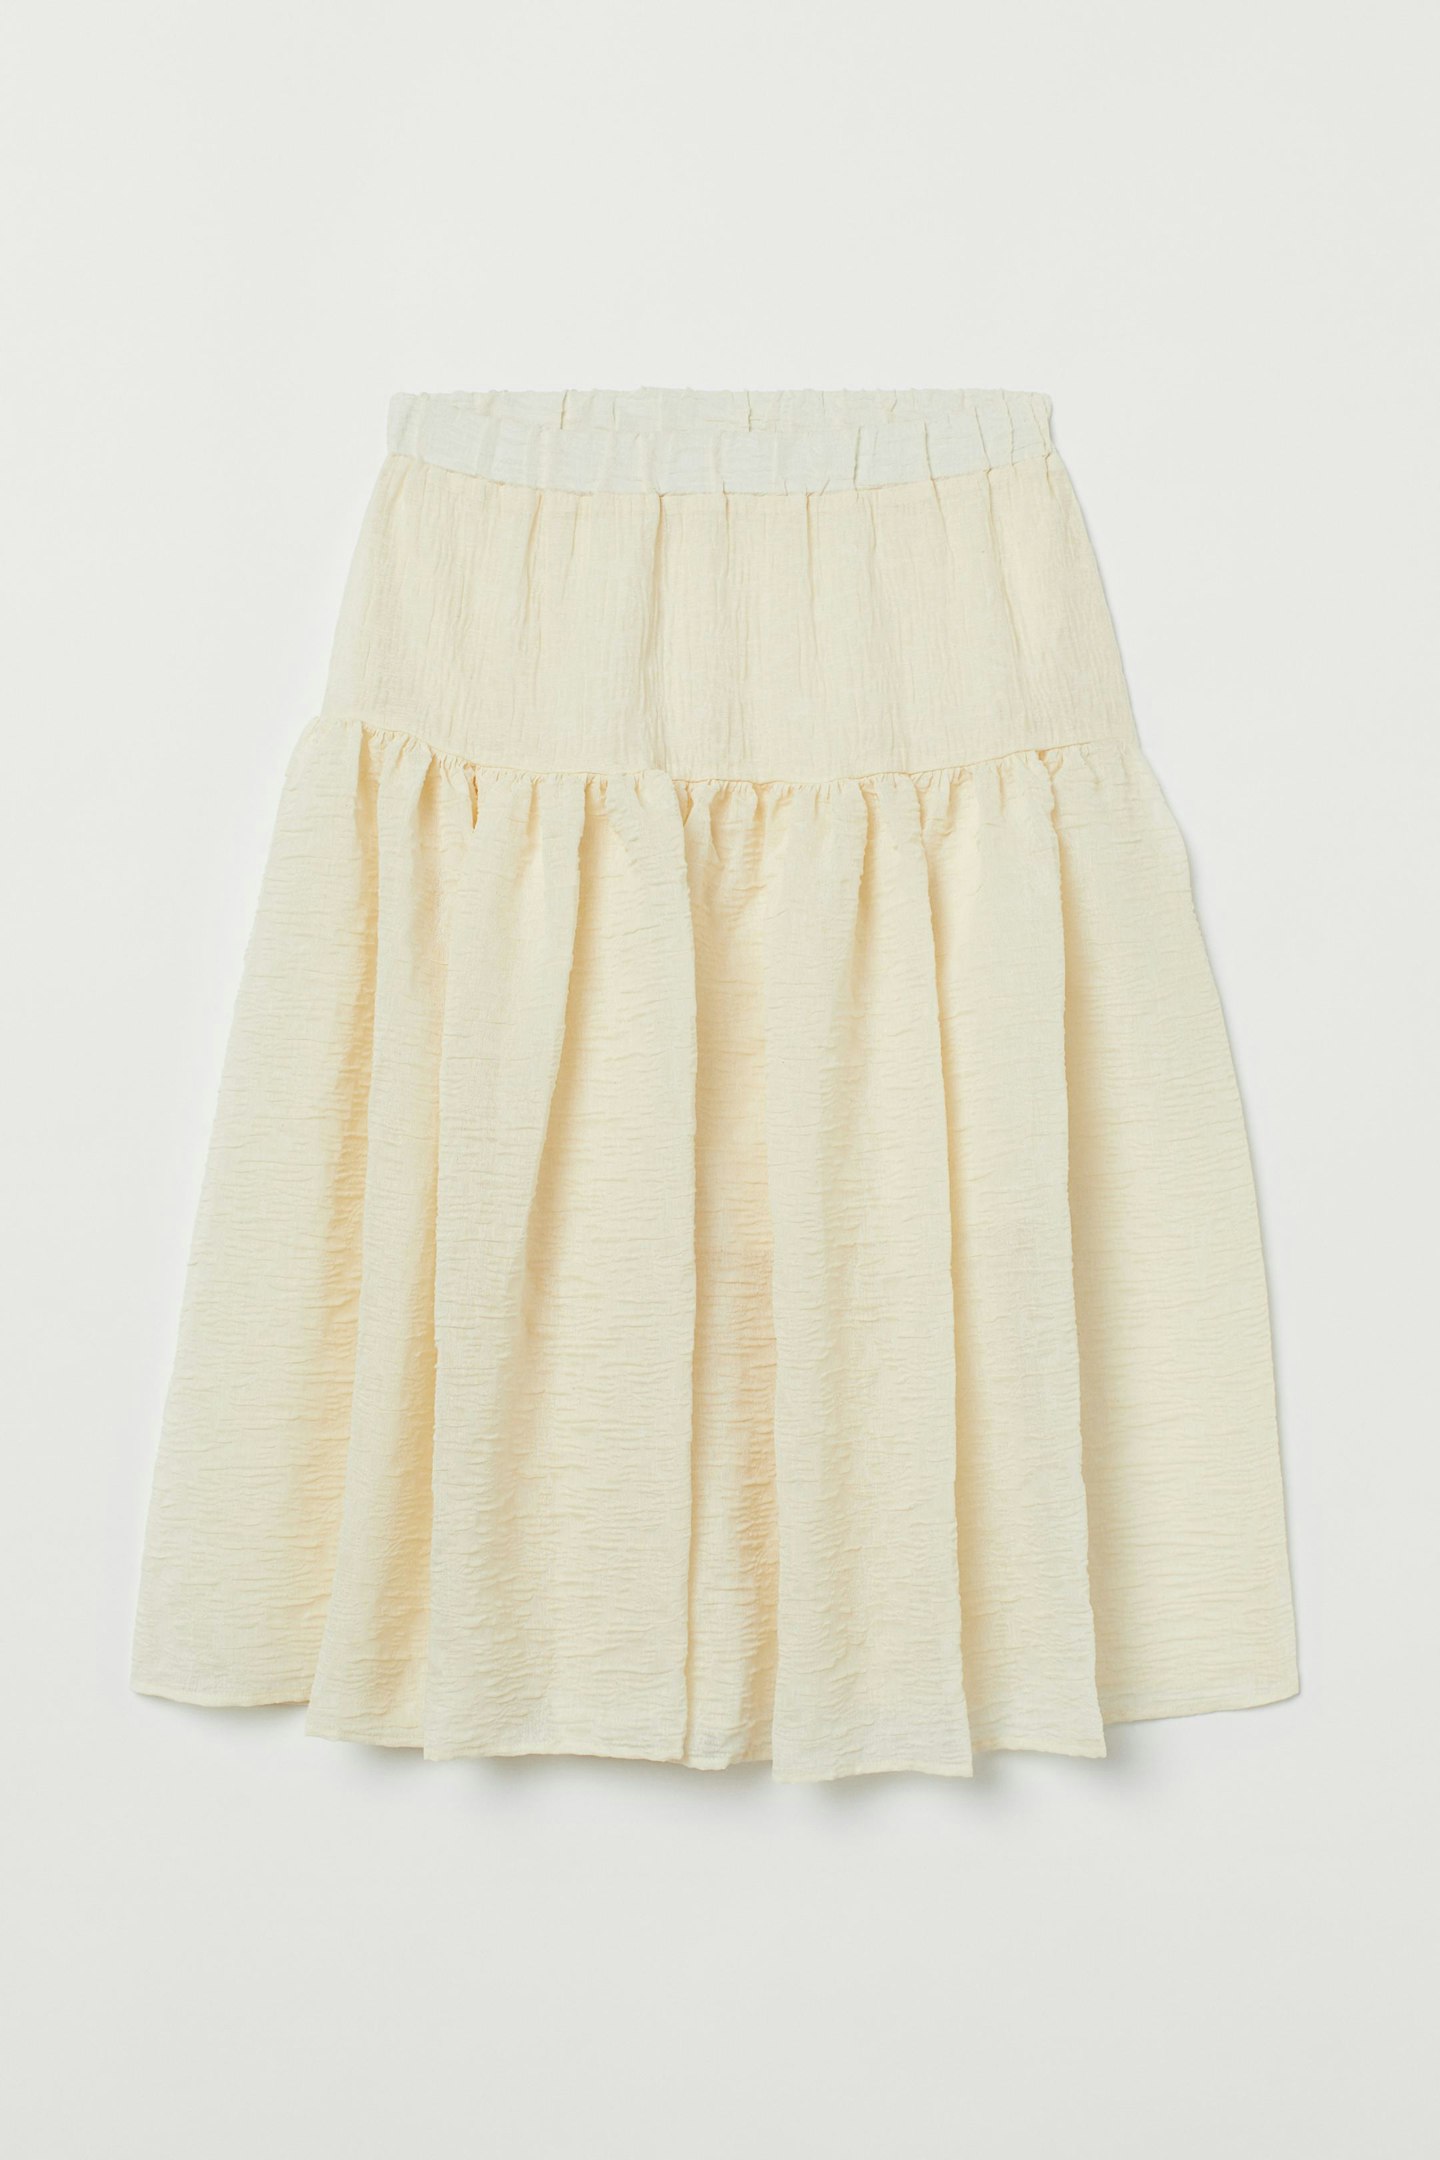 H&M, Airy Skirt, £39.99